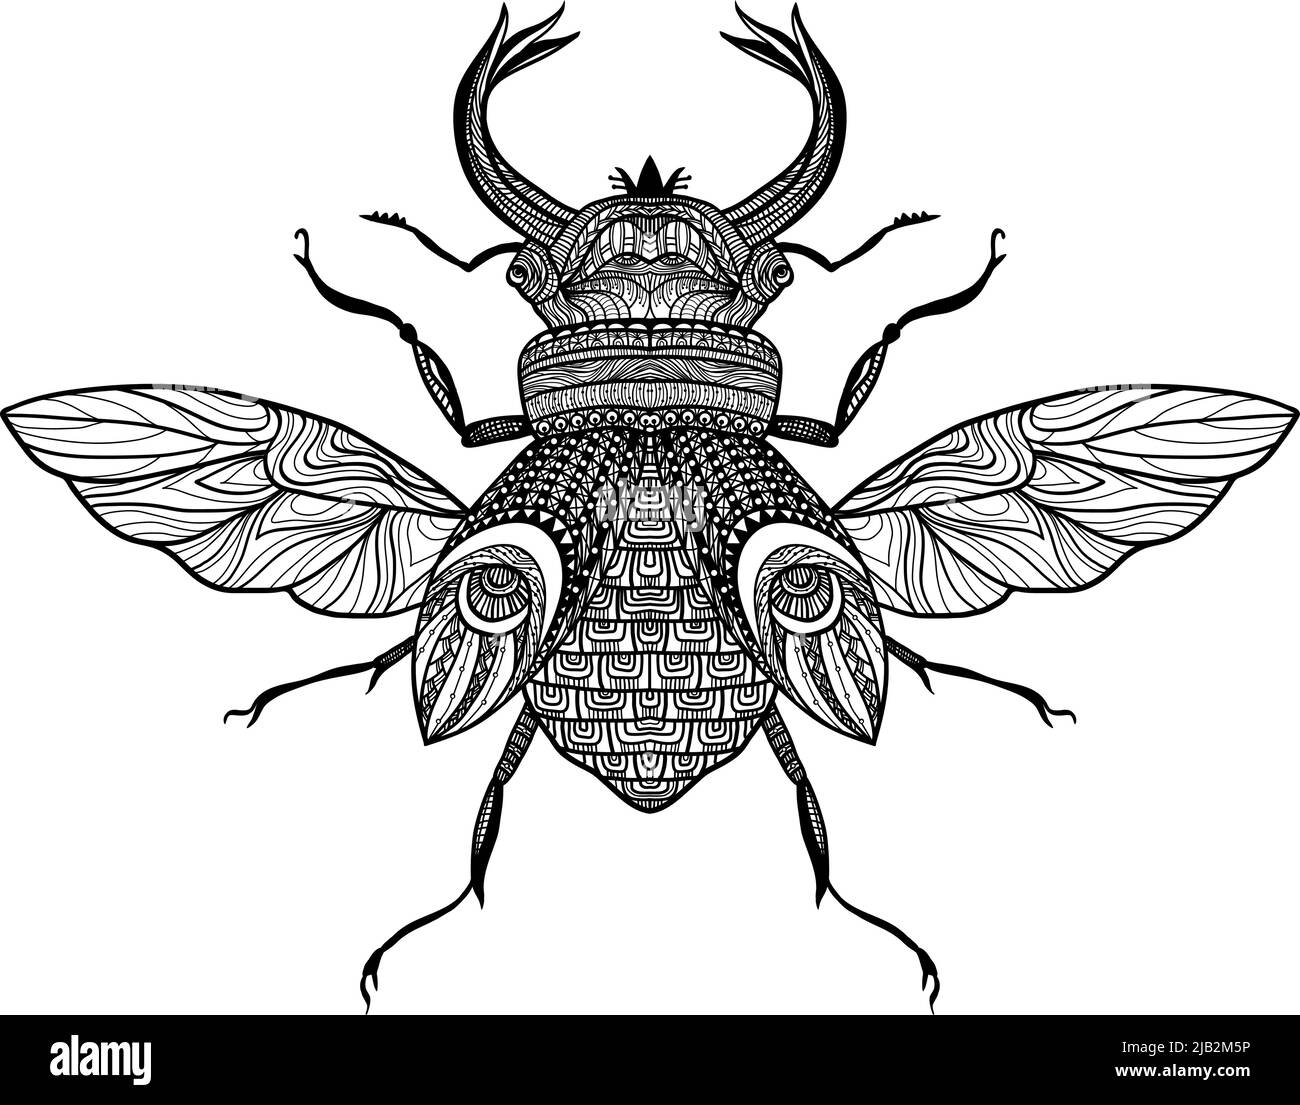 Bosquejo de insecto decorativo con ornamento dibujado a mano ilustración de vector negro Ilustración del Vector